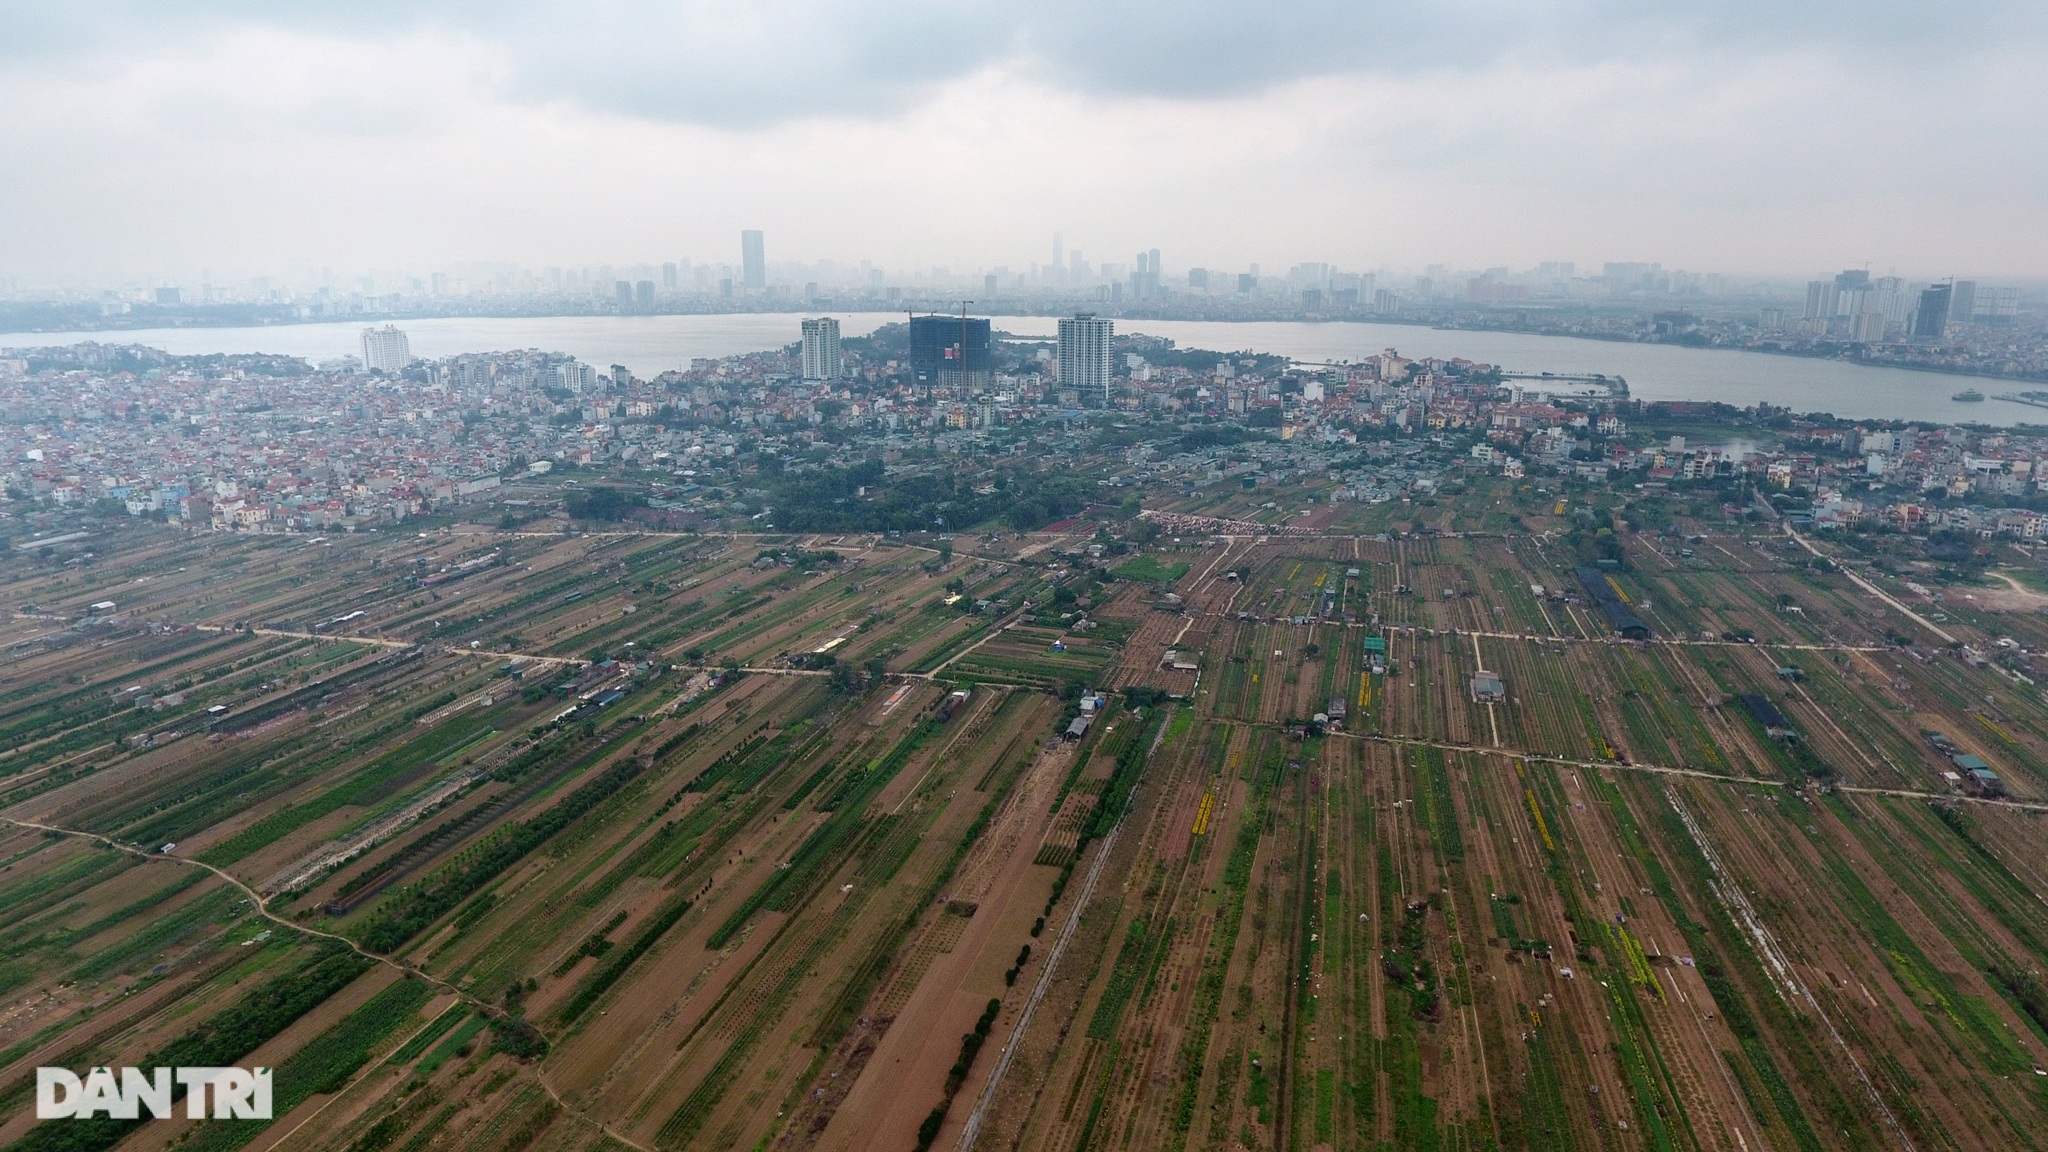 Quy hoạch đô thị sông Hồng: Điều cần quan tâm nhất là gì?